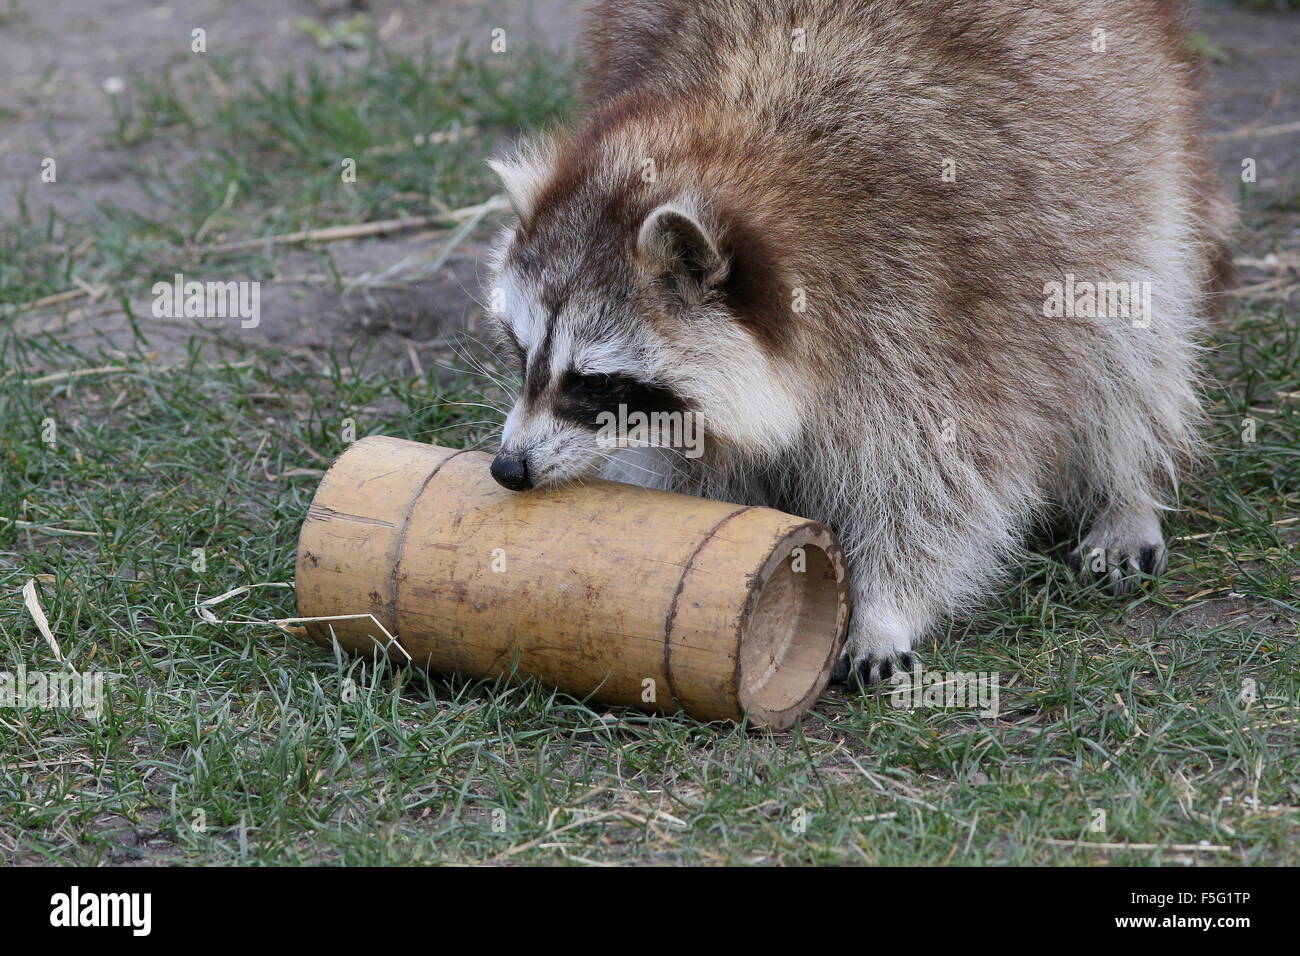 Nordamerikanischer Waschbär (Procyon Lotor) versuchen, einen Snack aus einem Bambus-Container in Rotterdam Blijdorp Zoo, Niederlande zu extrahieren Stockfoto